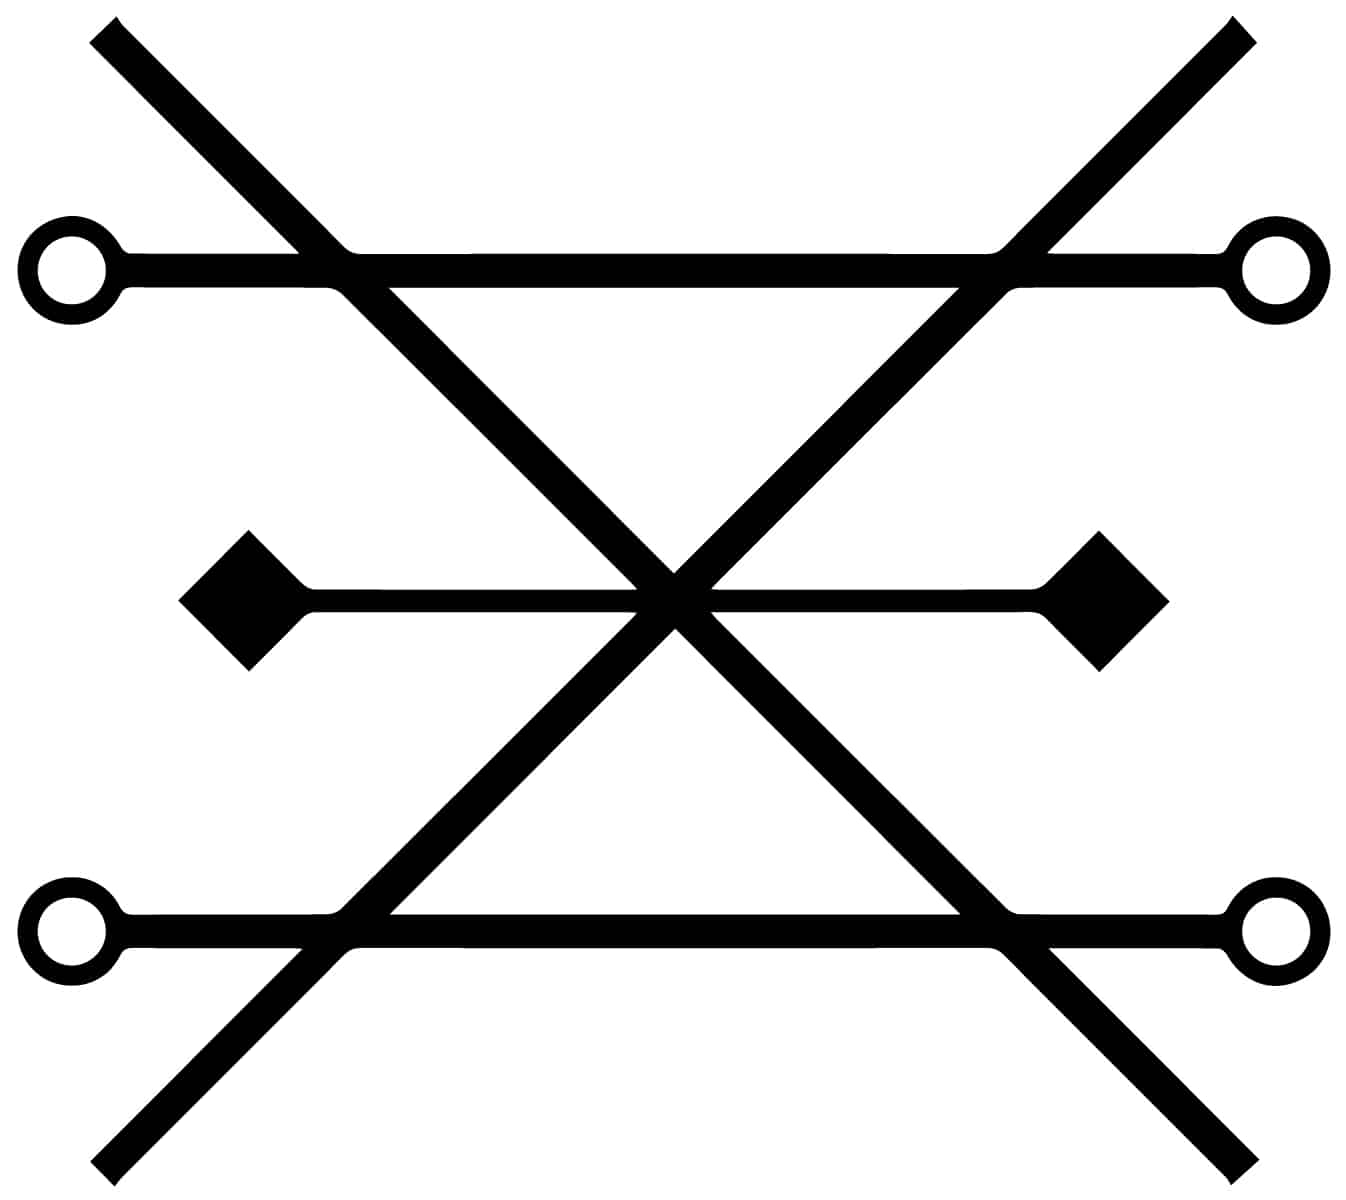 錬金術のシンボルとその意味 - 錬金術シンボル拡張リスト